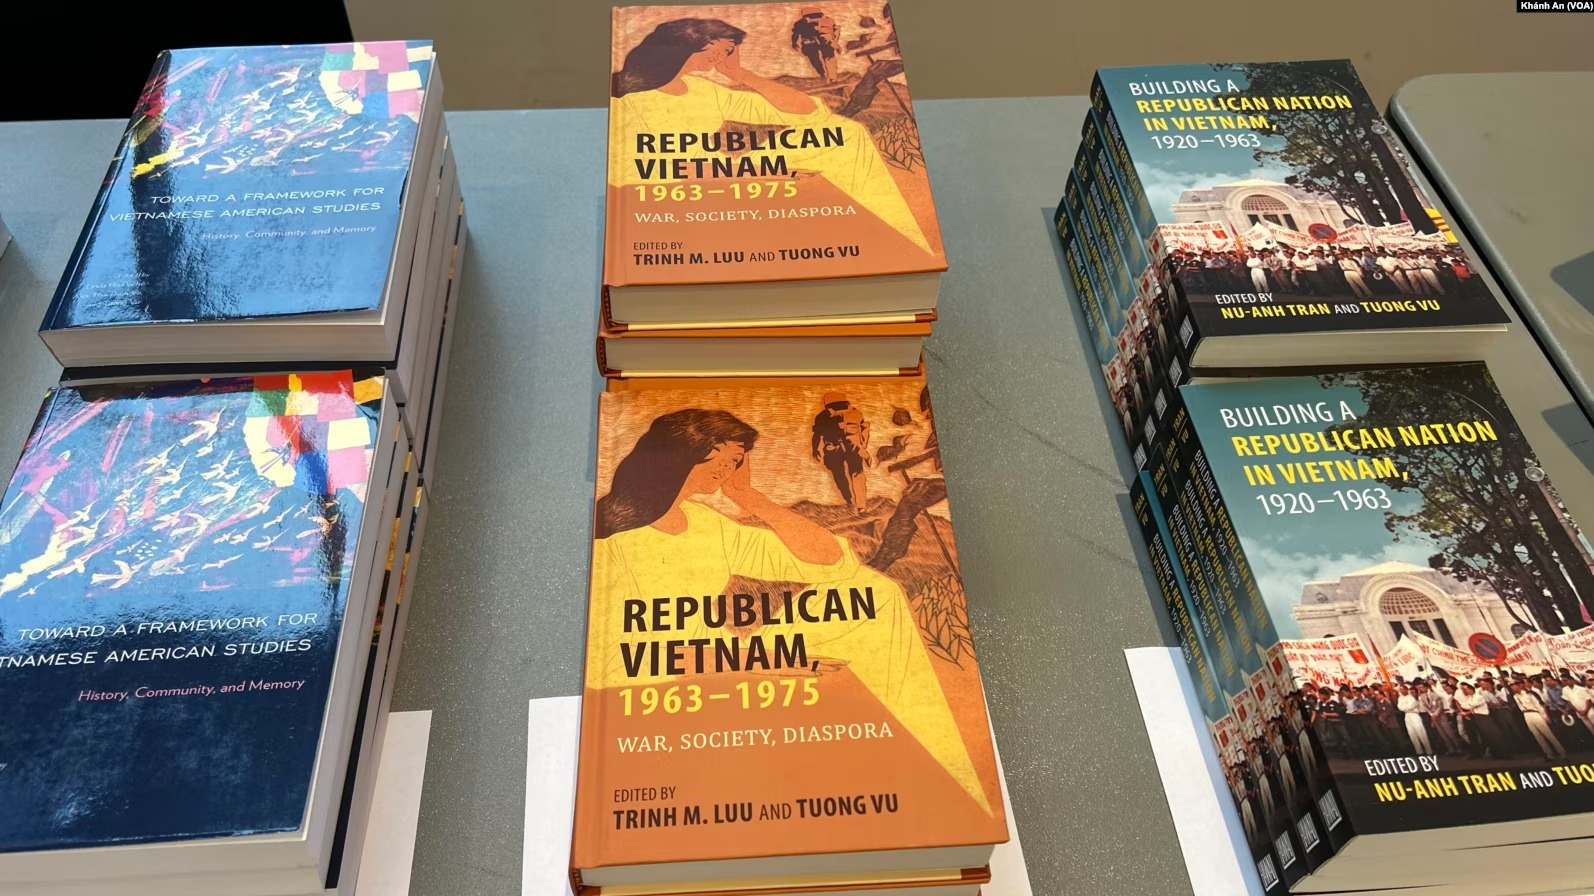 Các tác phẩm nghiên cứu về nền Cộng hoà tại Việt Nam do nhóm học giả người Việt thực hiện được giới thiệu tại hội thảo ở Đại học Oregon. Ảnh: Khánh An - VOA